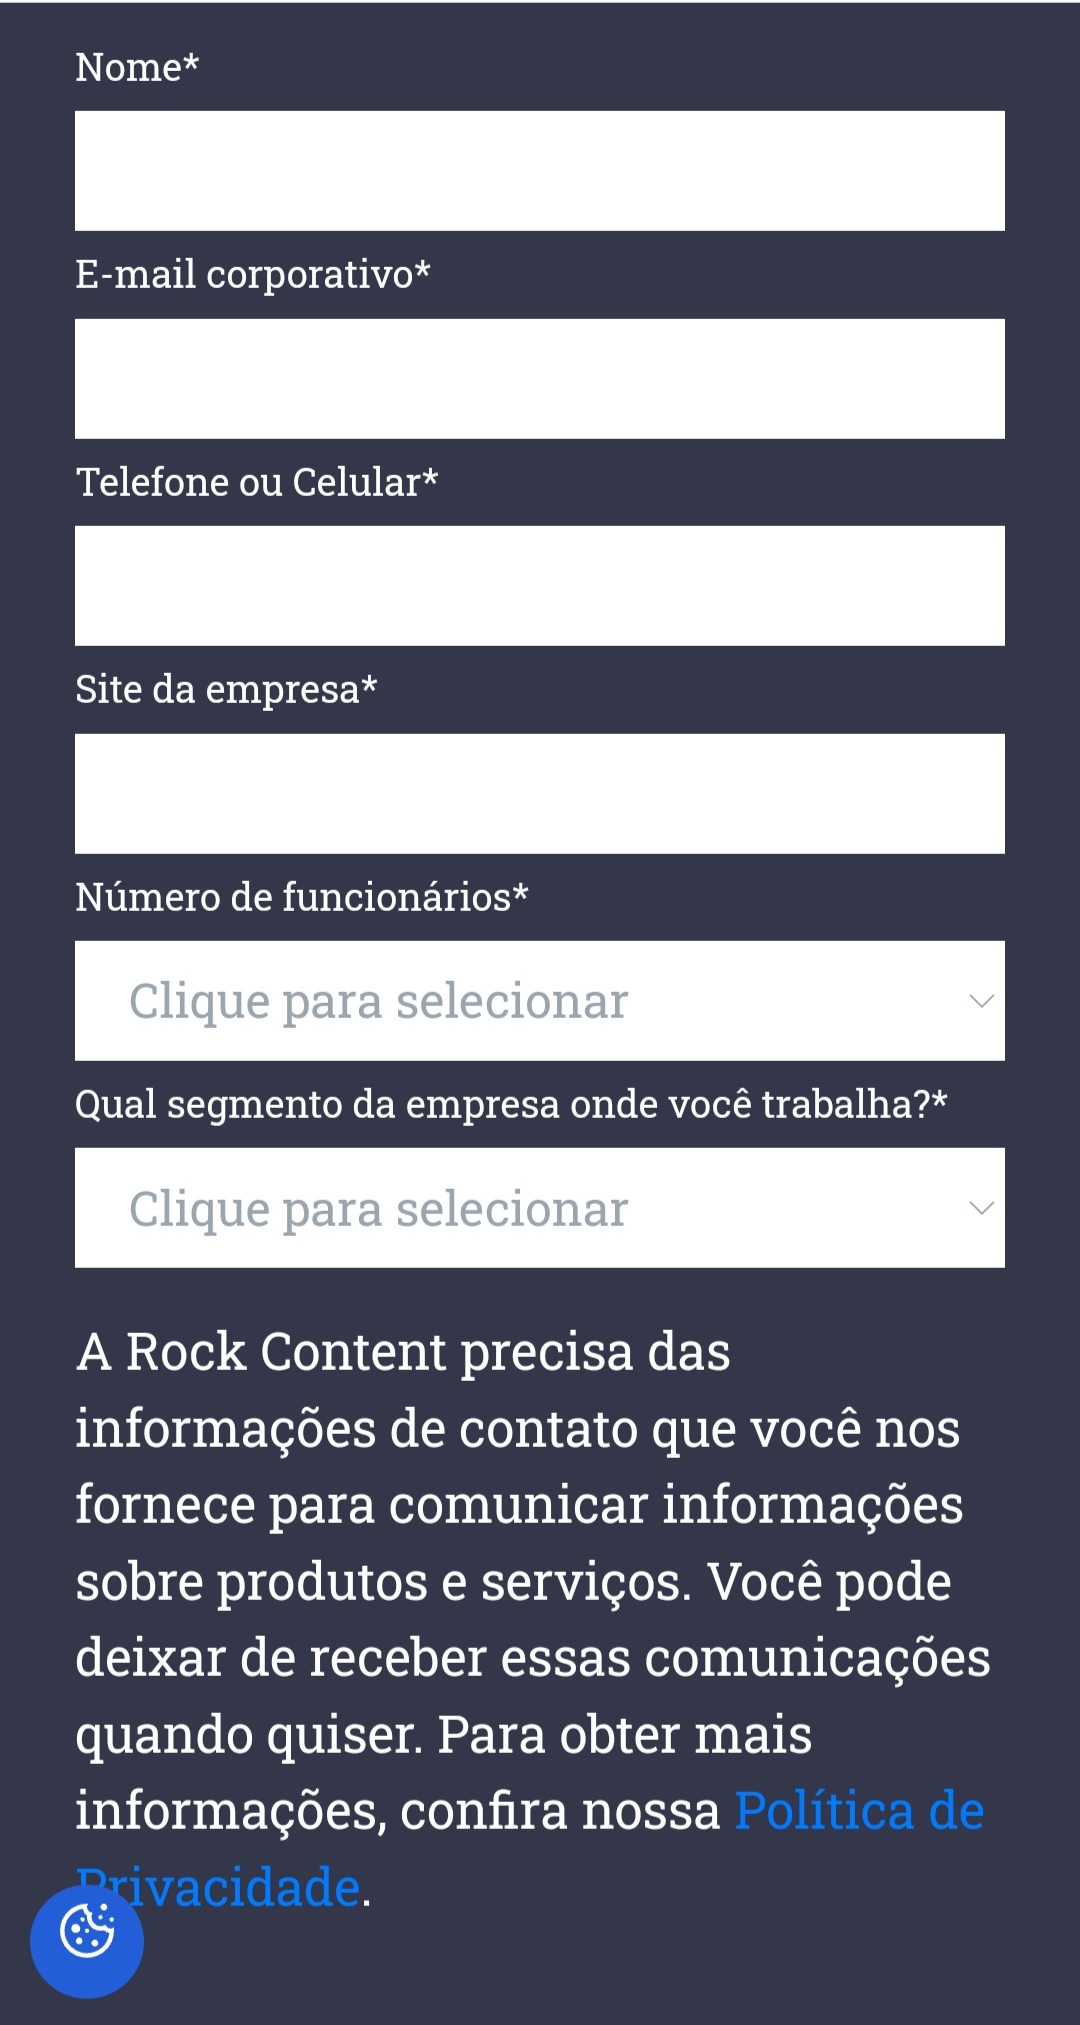 A RockContent oferece um ebook sobre Planejamento de Marketing para 2023 em troca apenas de dados como nome, e-mail corporativo, número de funcionários e segmento da sua empresa.